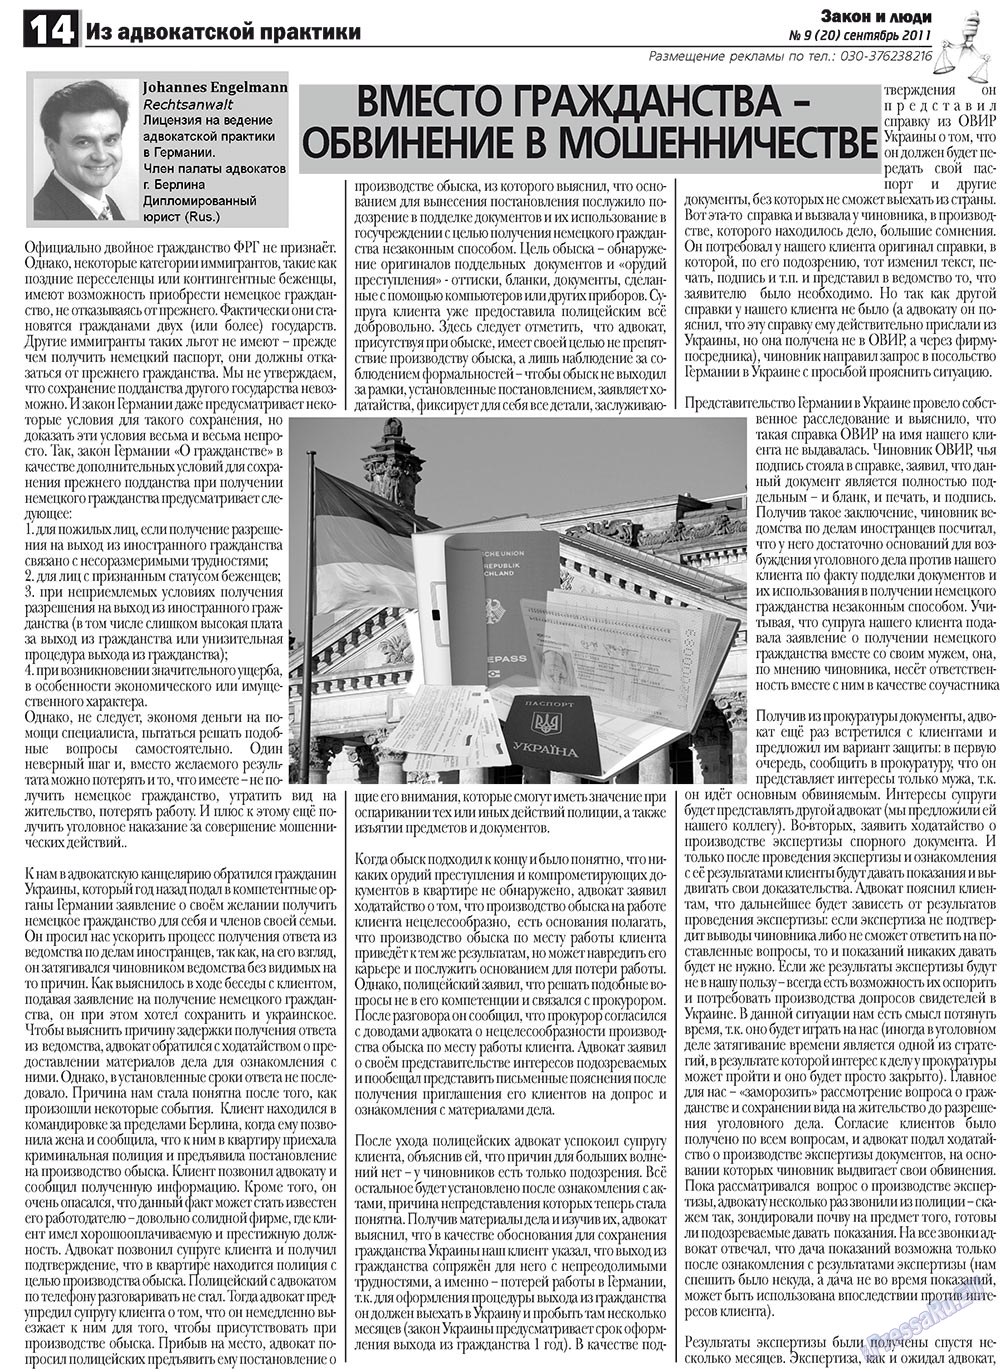 Закон и люди, газета. 2011 №9 стр.14